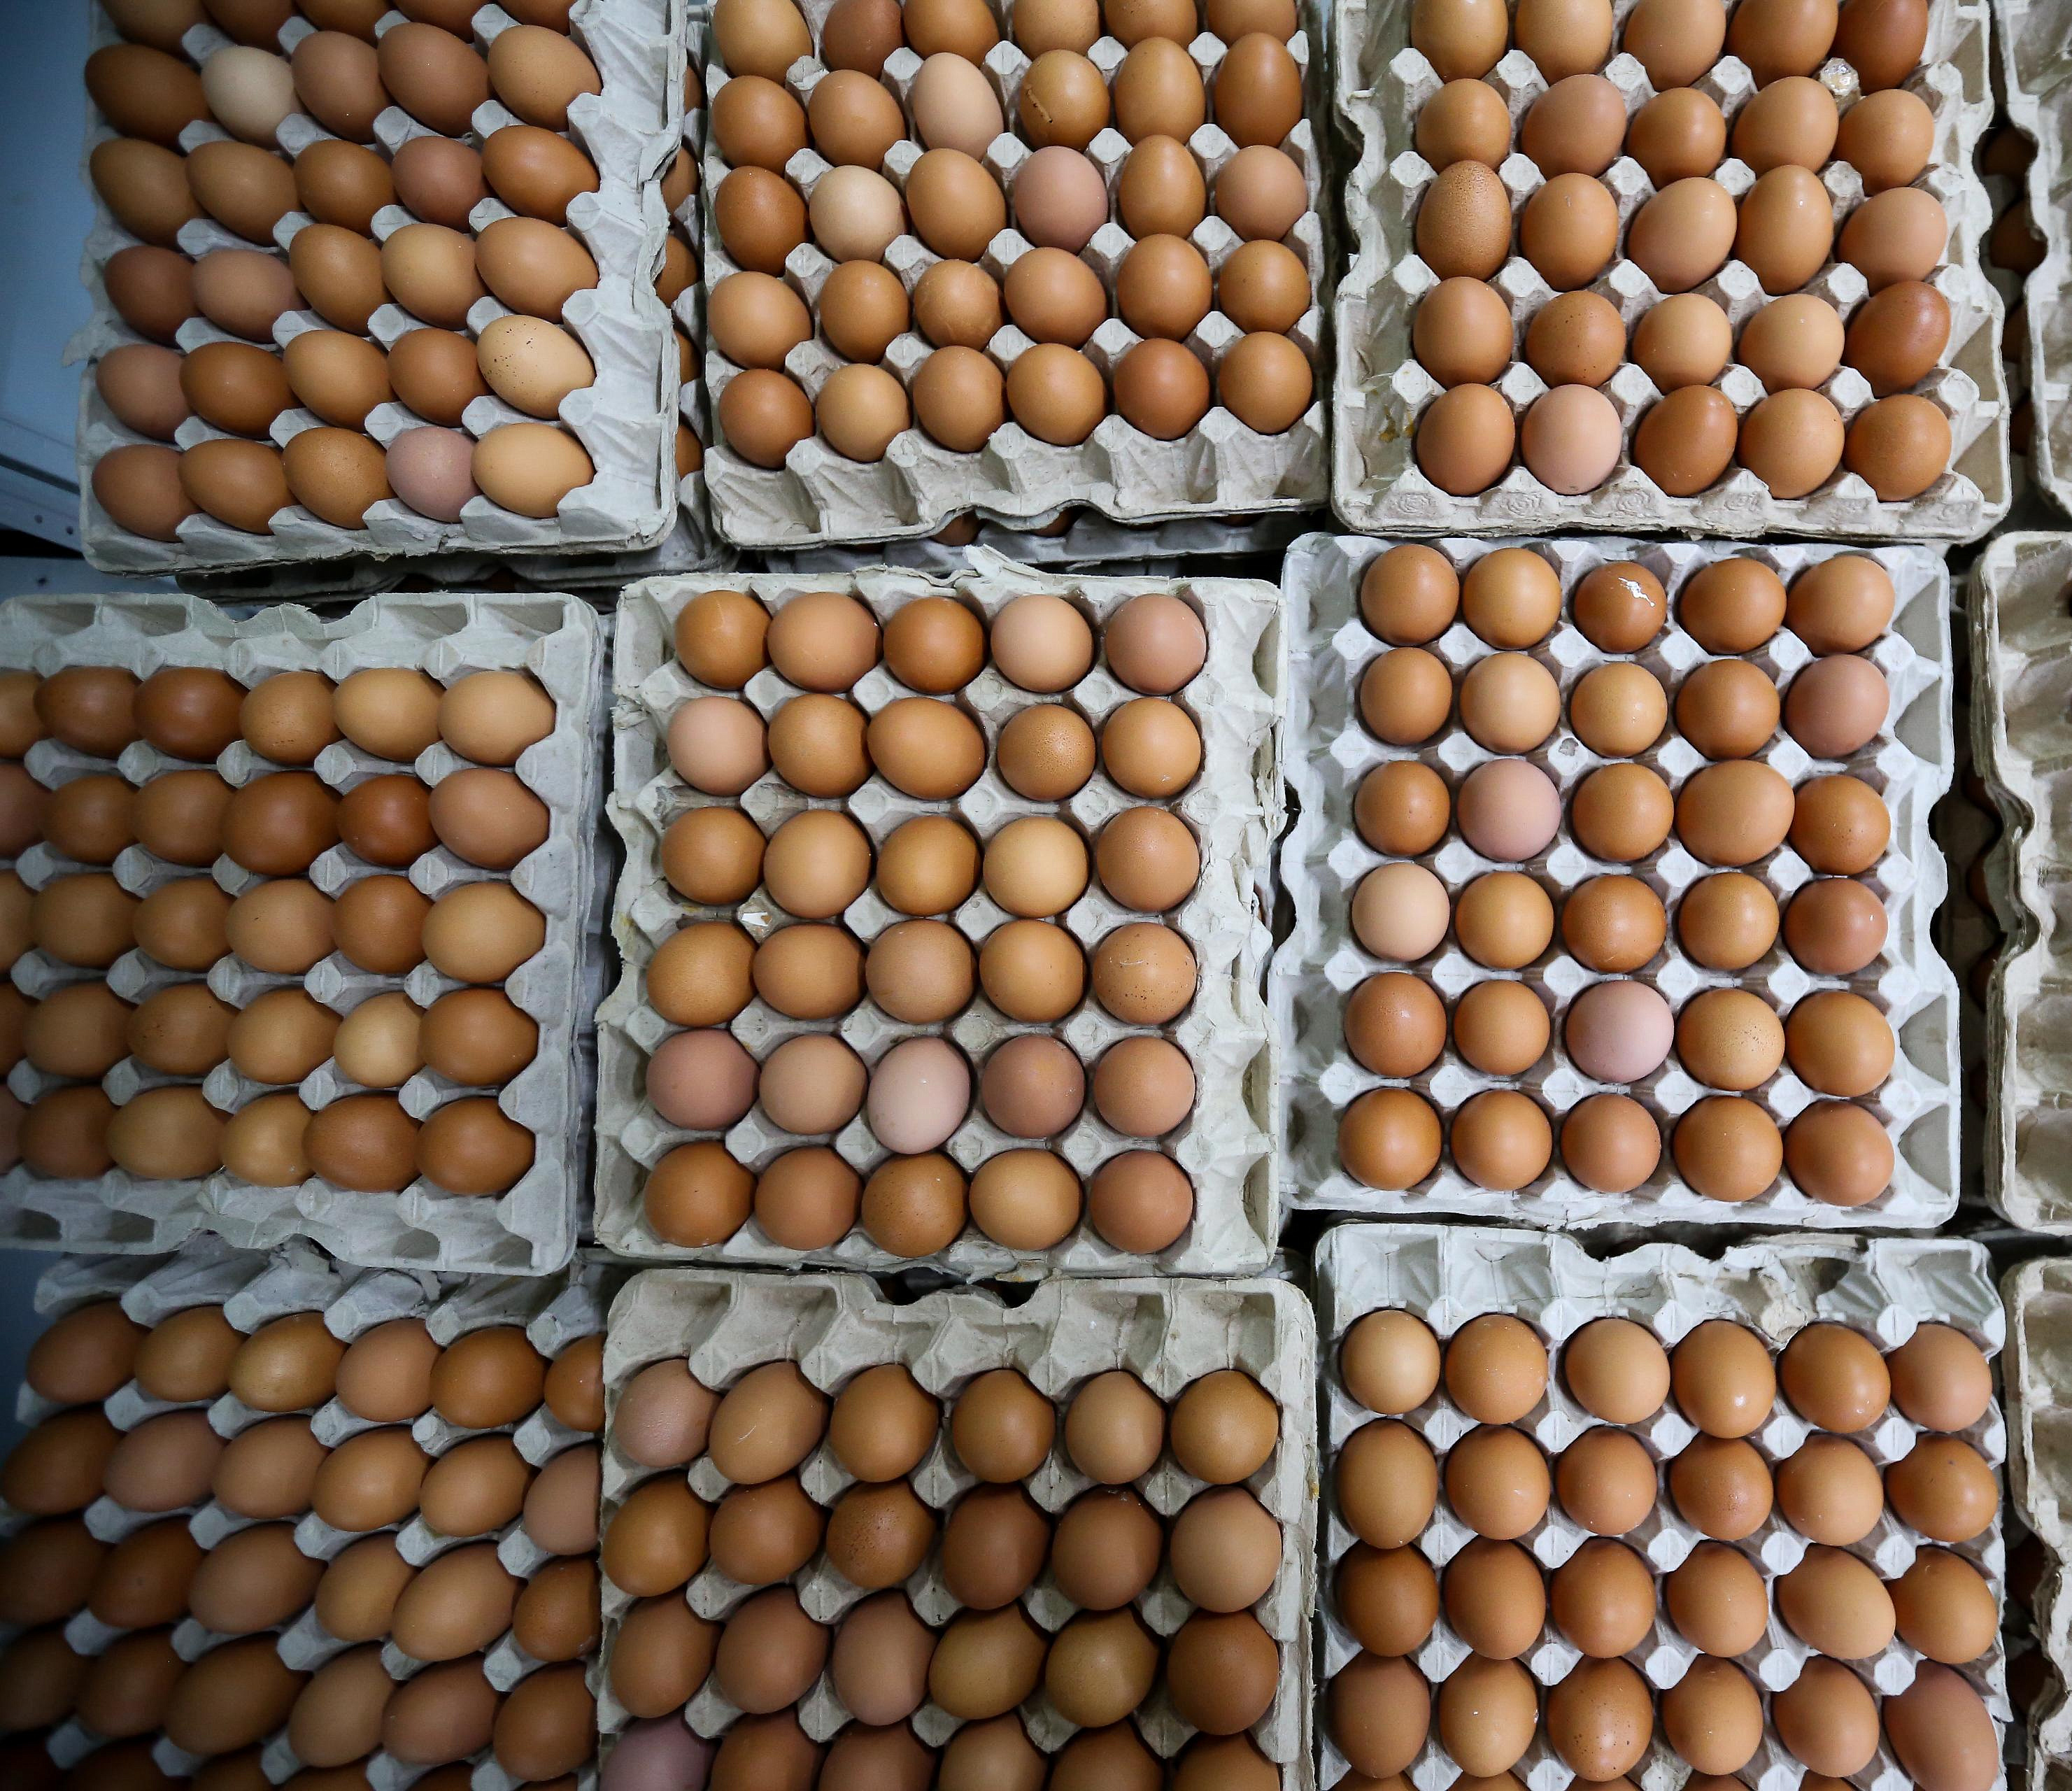 Шесть птицефабрик подписали соглашение о сдерживании цен на яйца